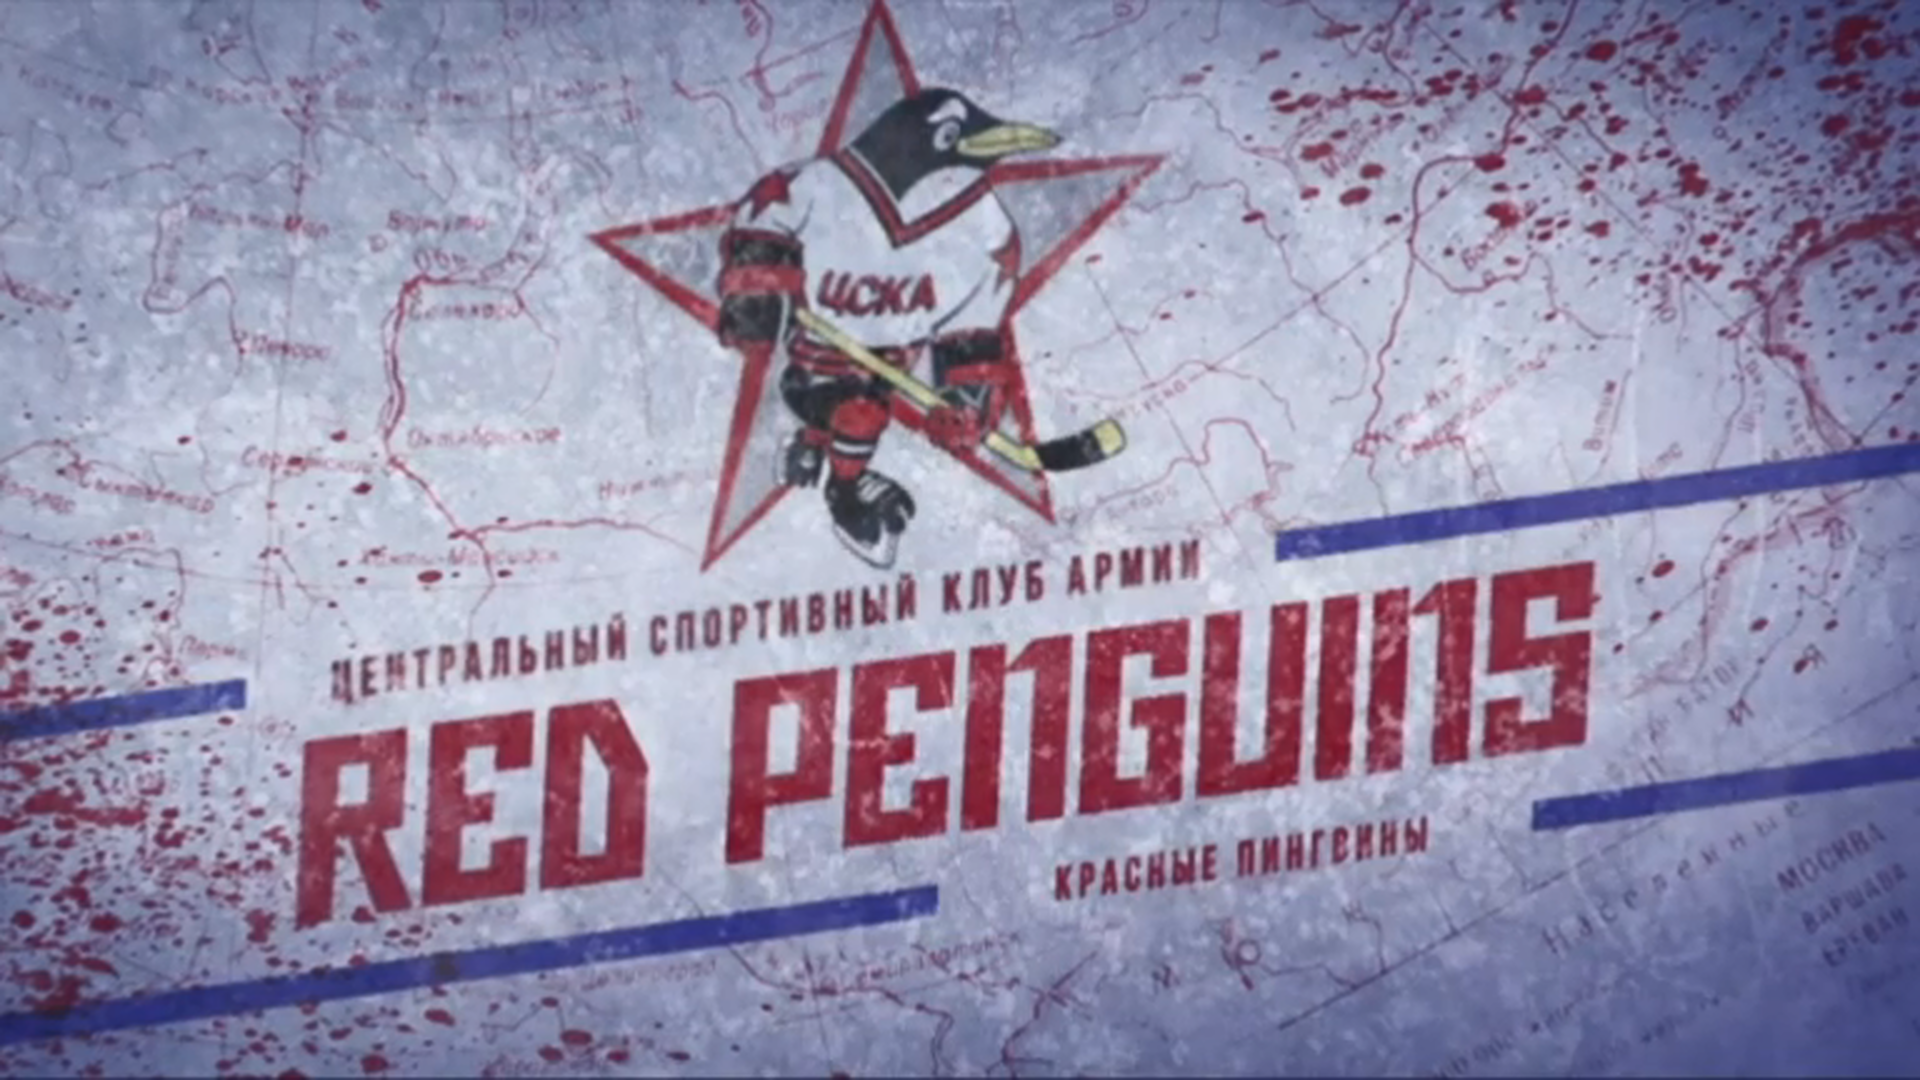 «Red Penguins» 🐧 Diese Doku lässt uns über Russland lachen und
schaudern zugleich